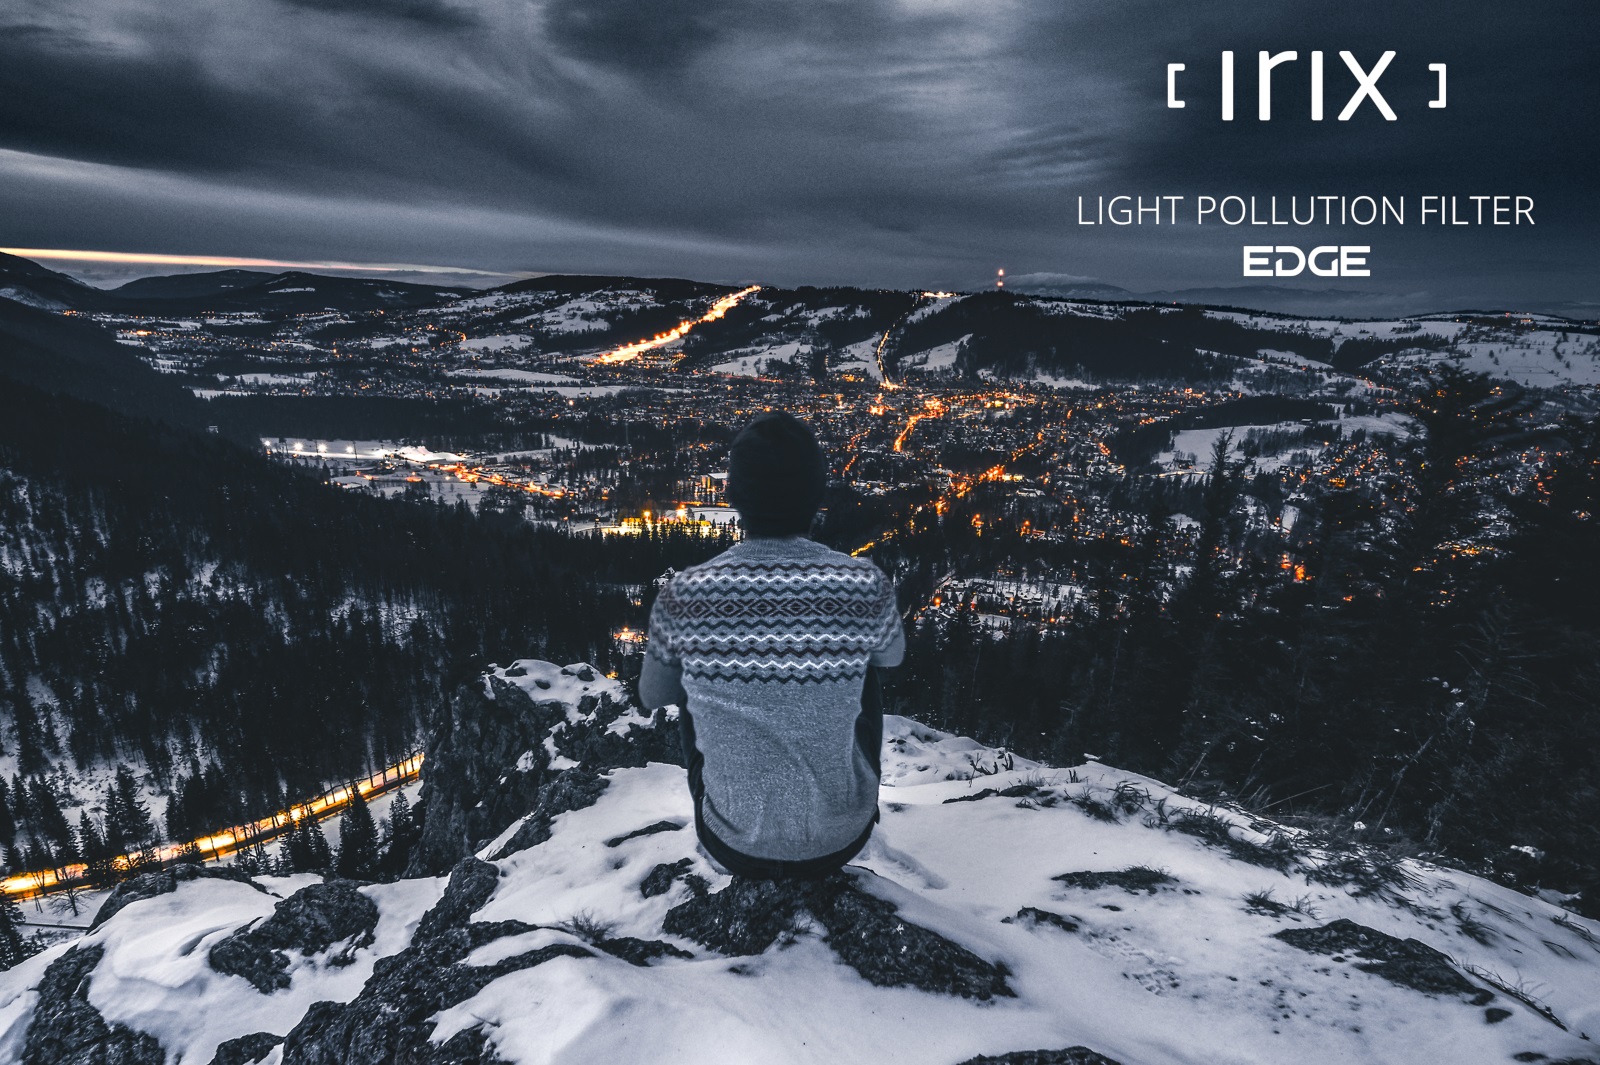 Irix Edge filtro de contaminación lumínica 82mm